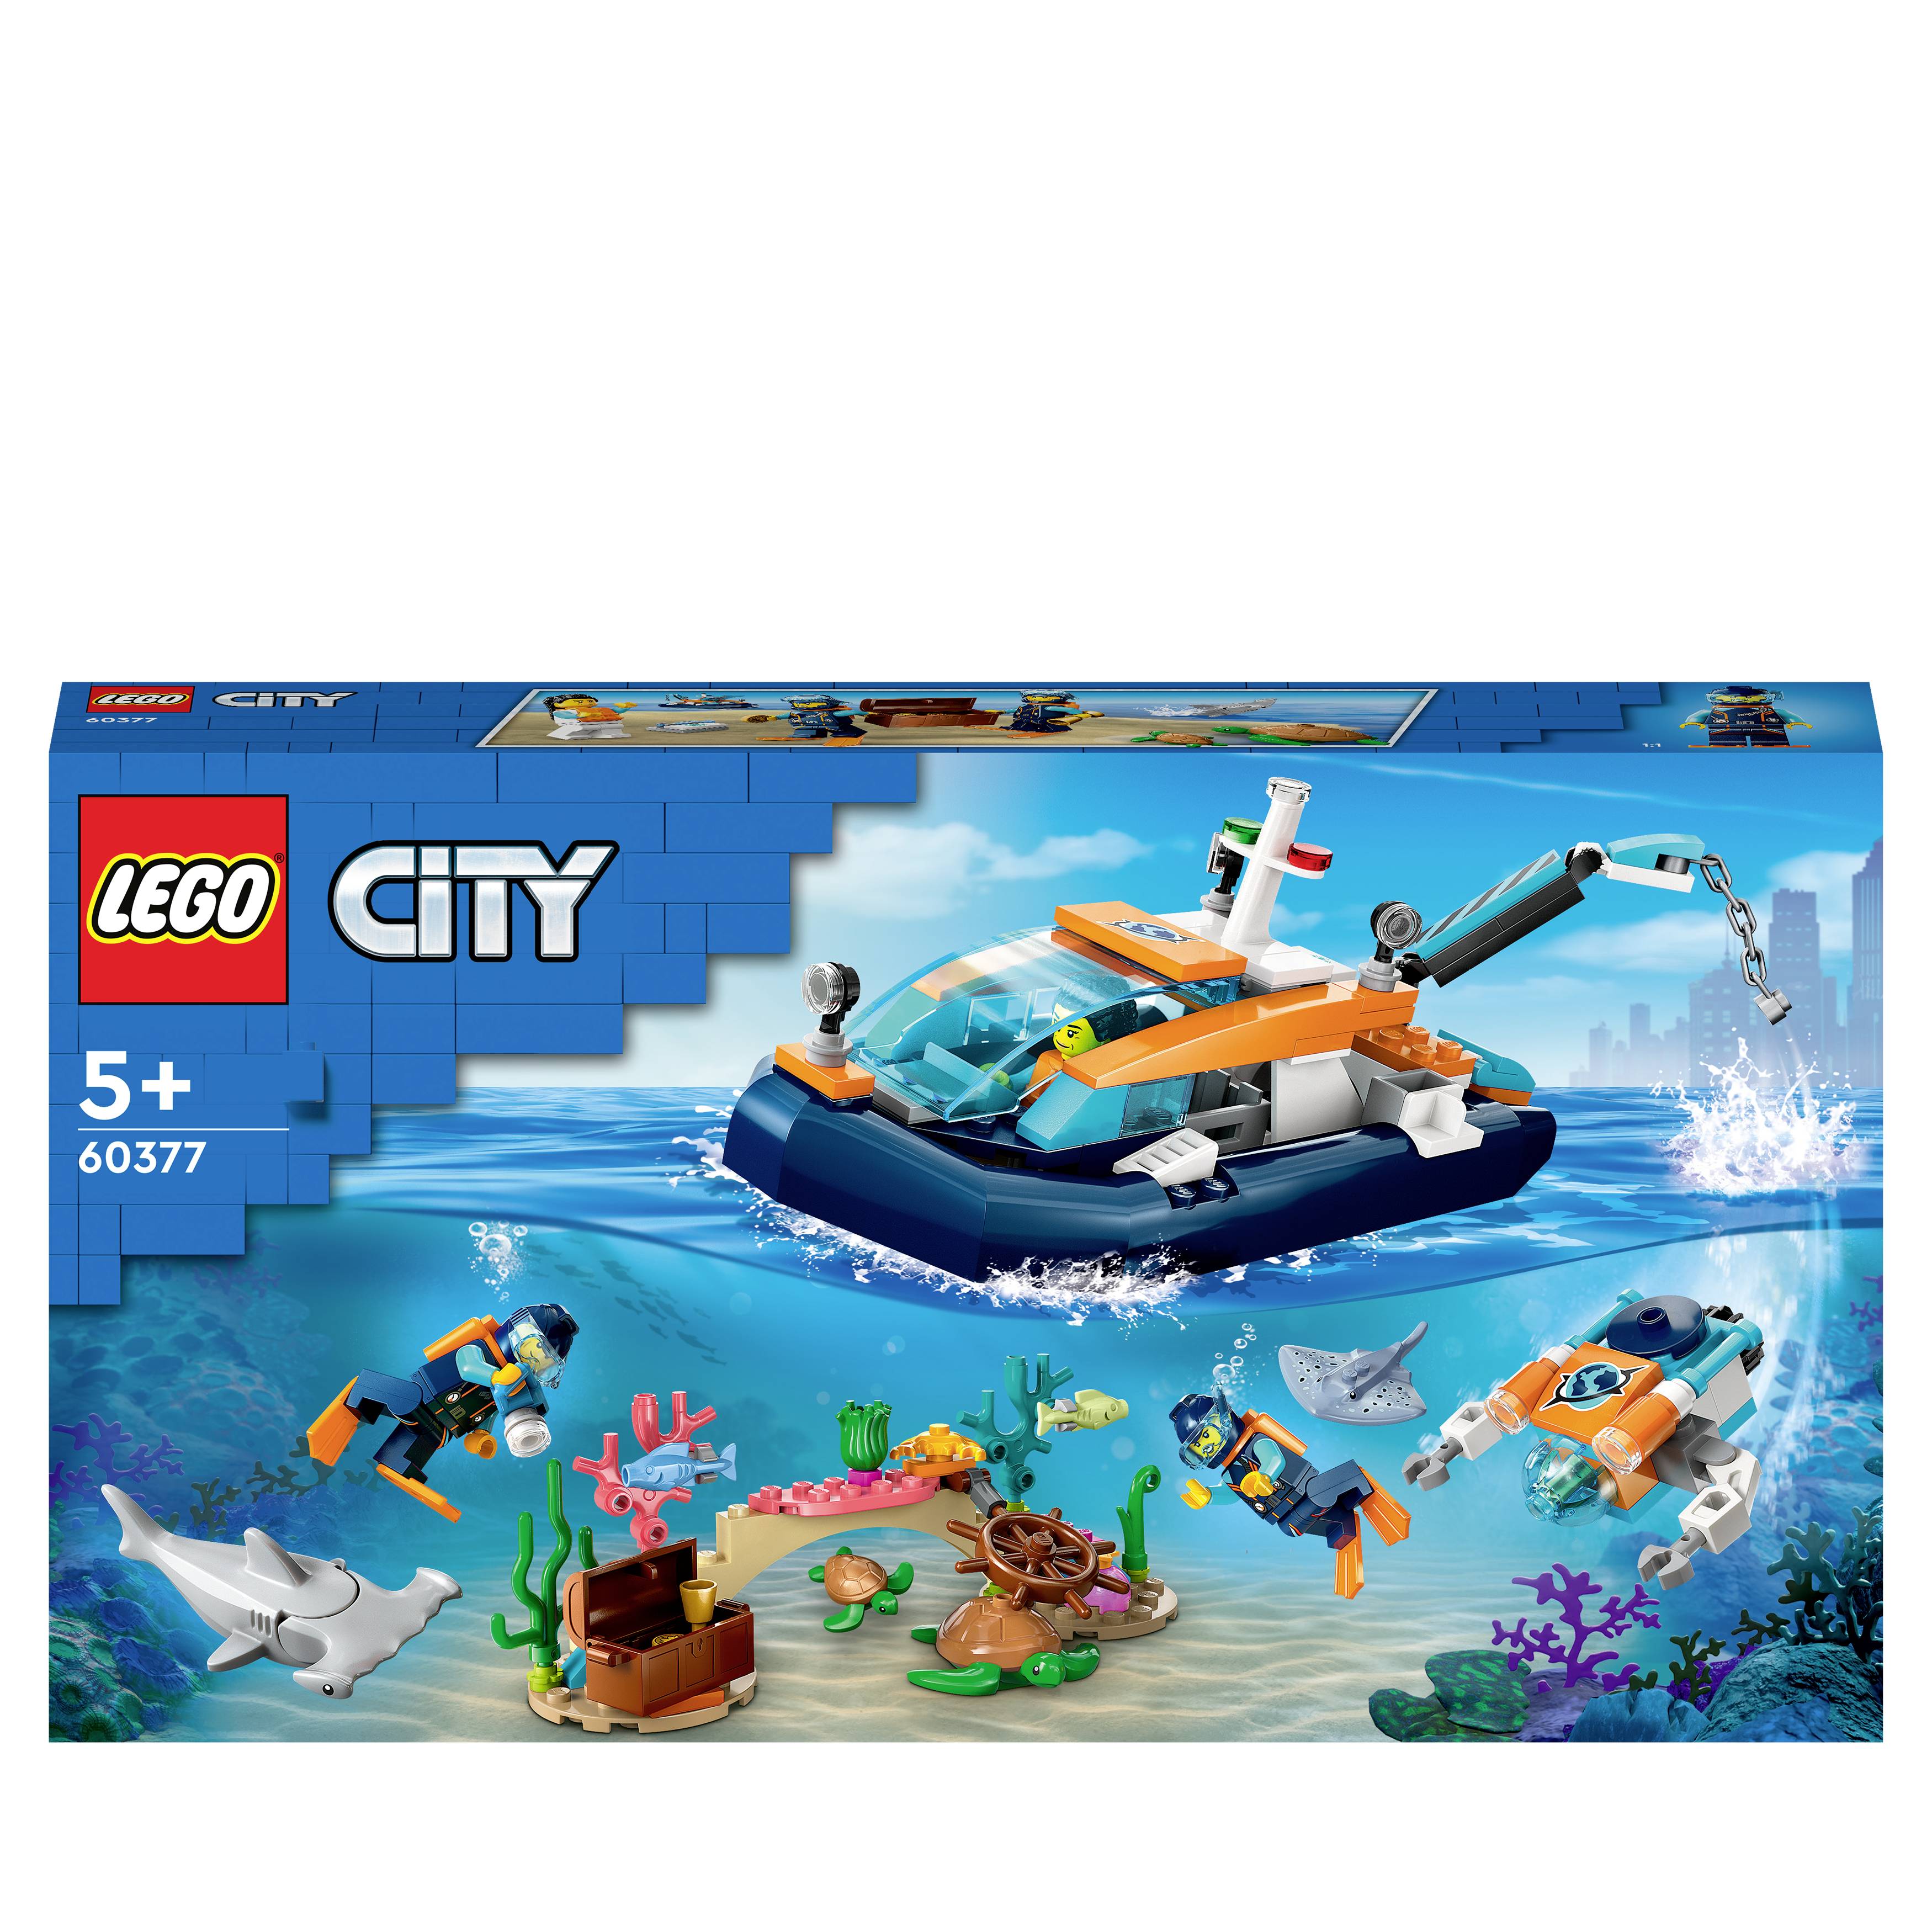 60377 LEGO® CITY | Conrad.com